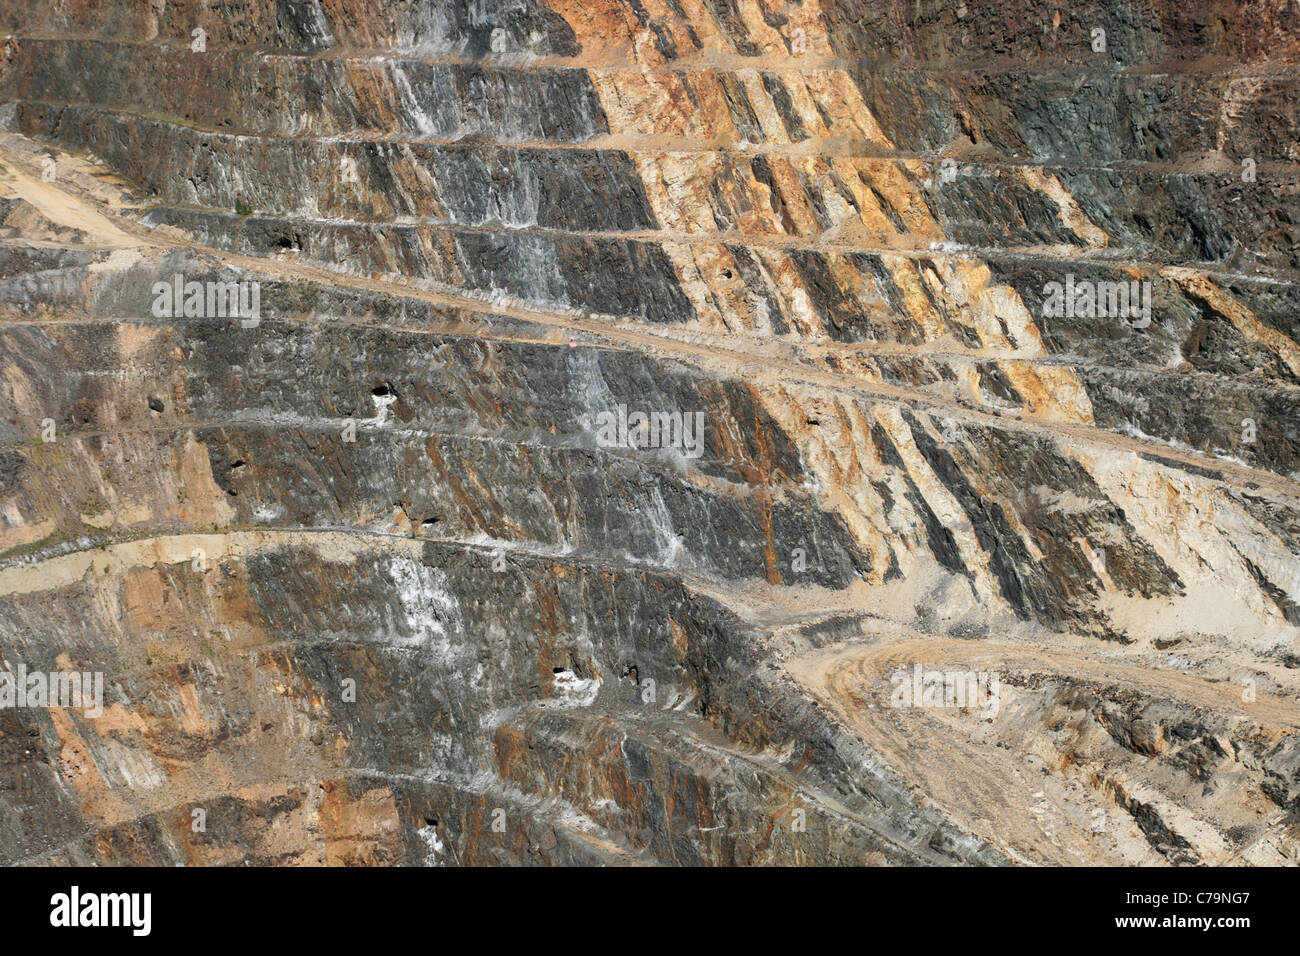 Côté de la mine Homestake mine à ciel ouvert dans la région de Lead, Dakota du Sud Banque D'Images